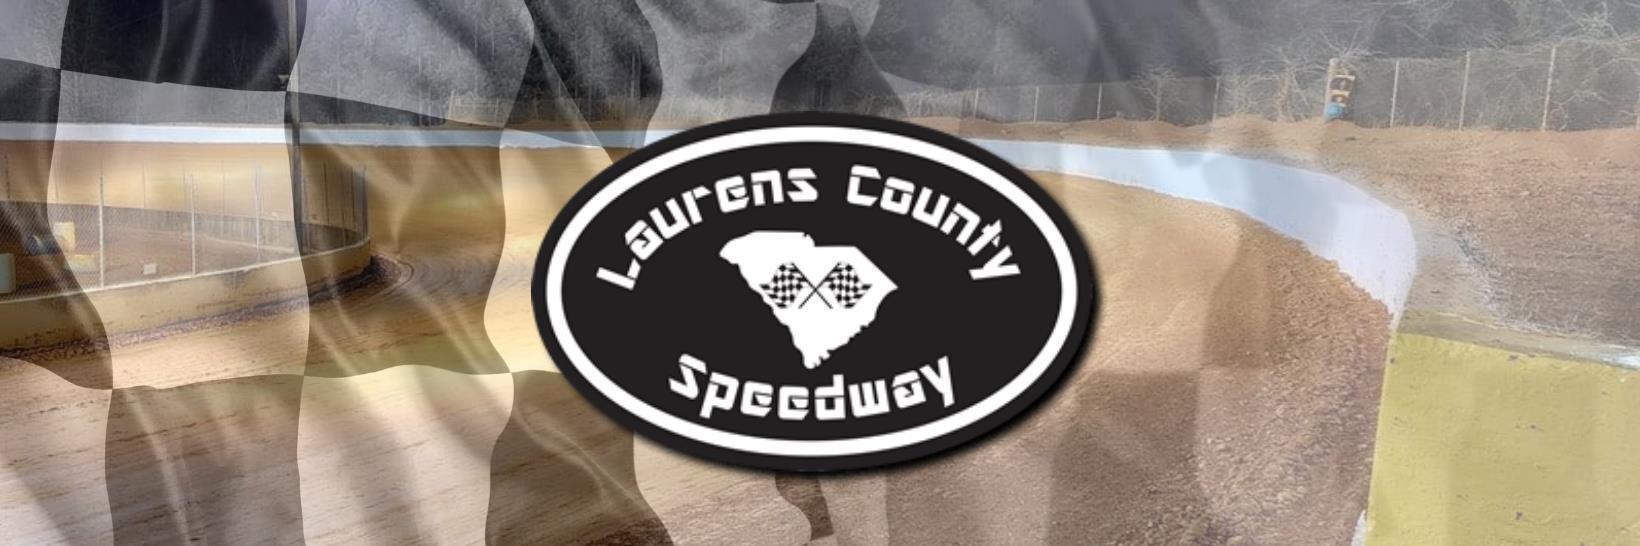 Laurens County Speedway